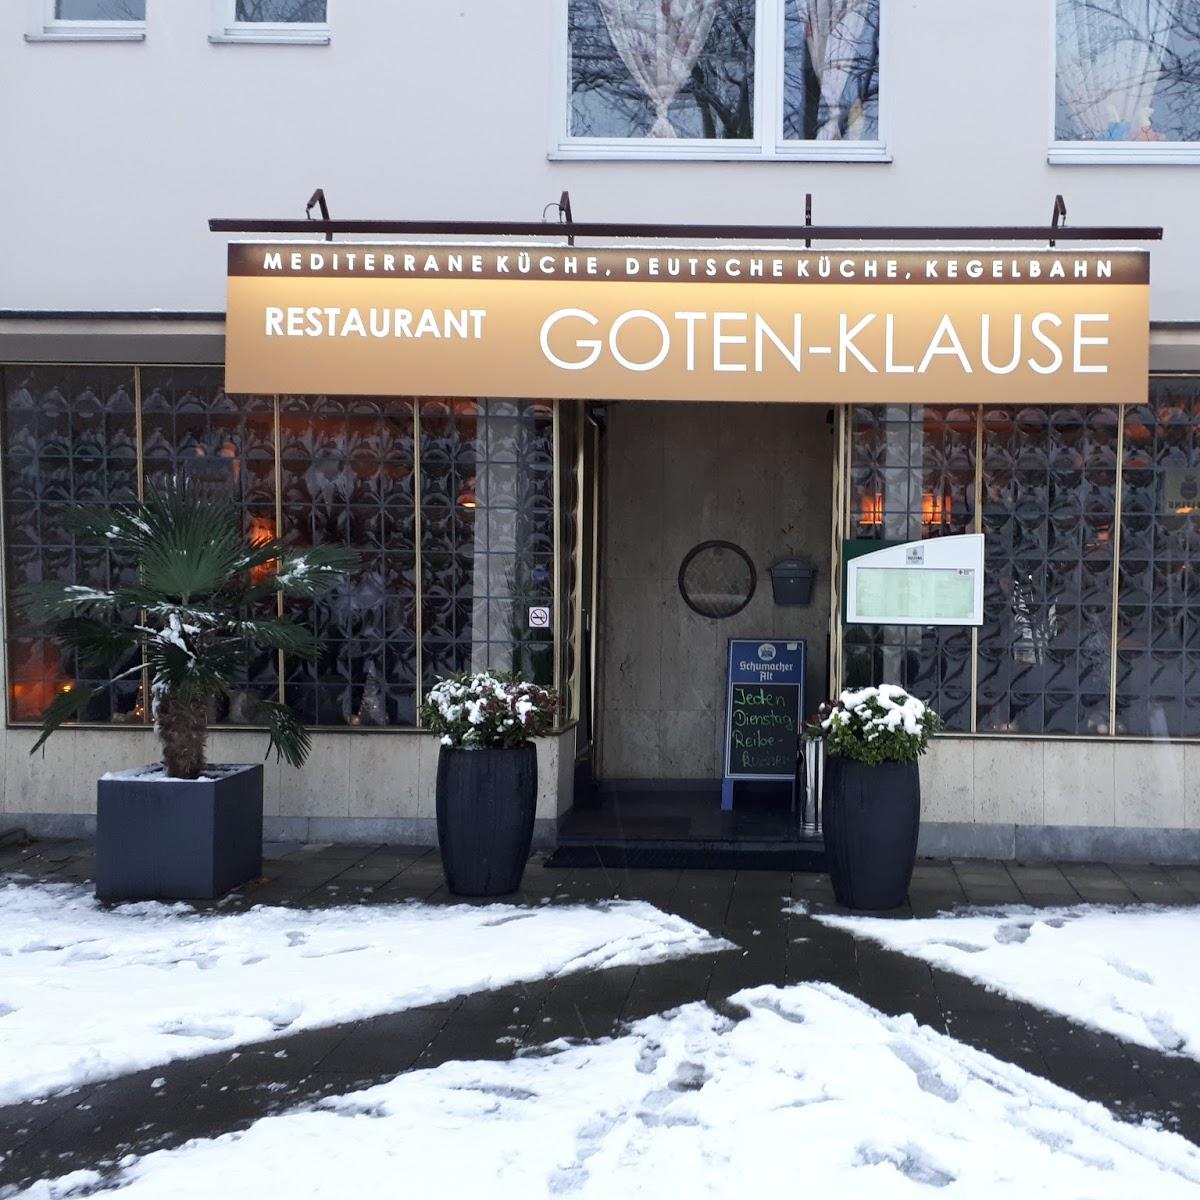 Restaurant "Goten-Klause" in Düsseldorf